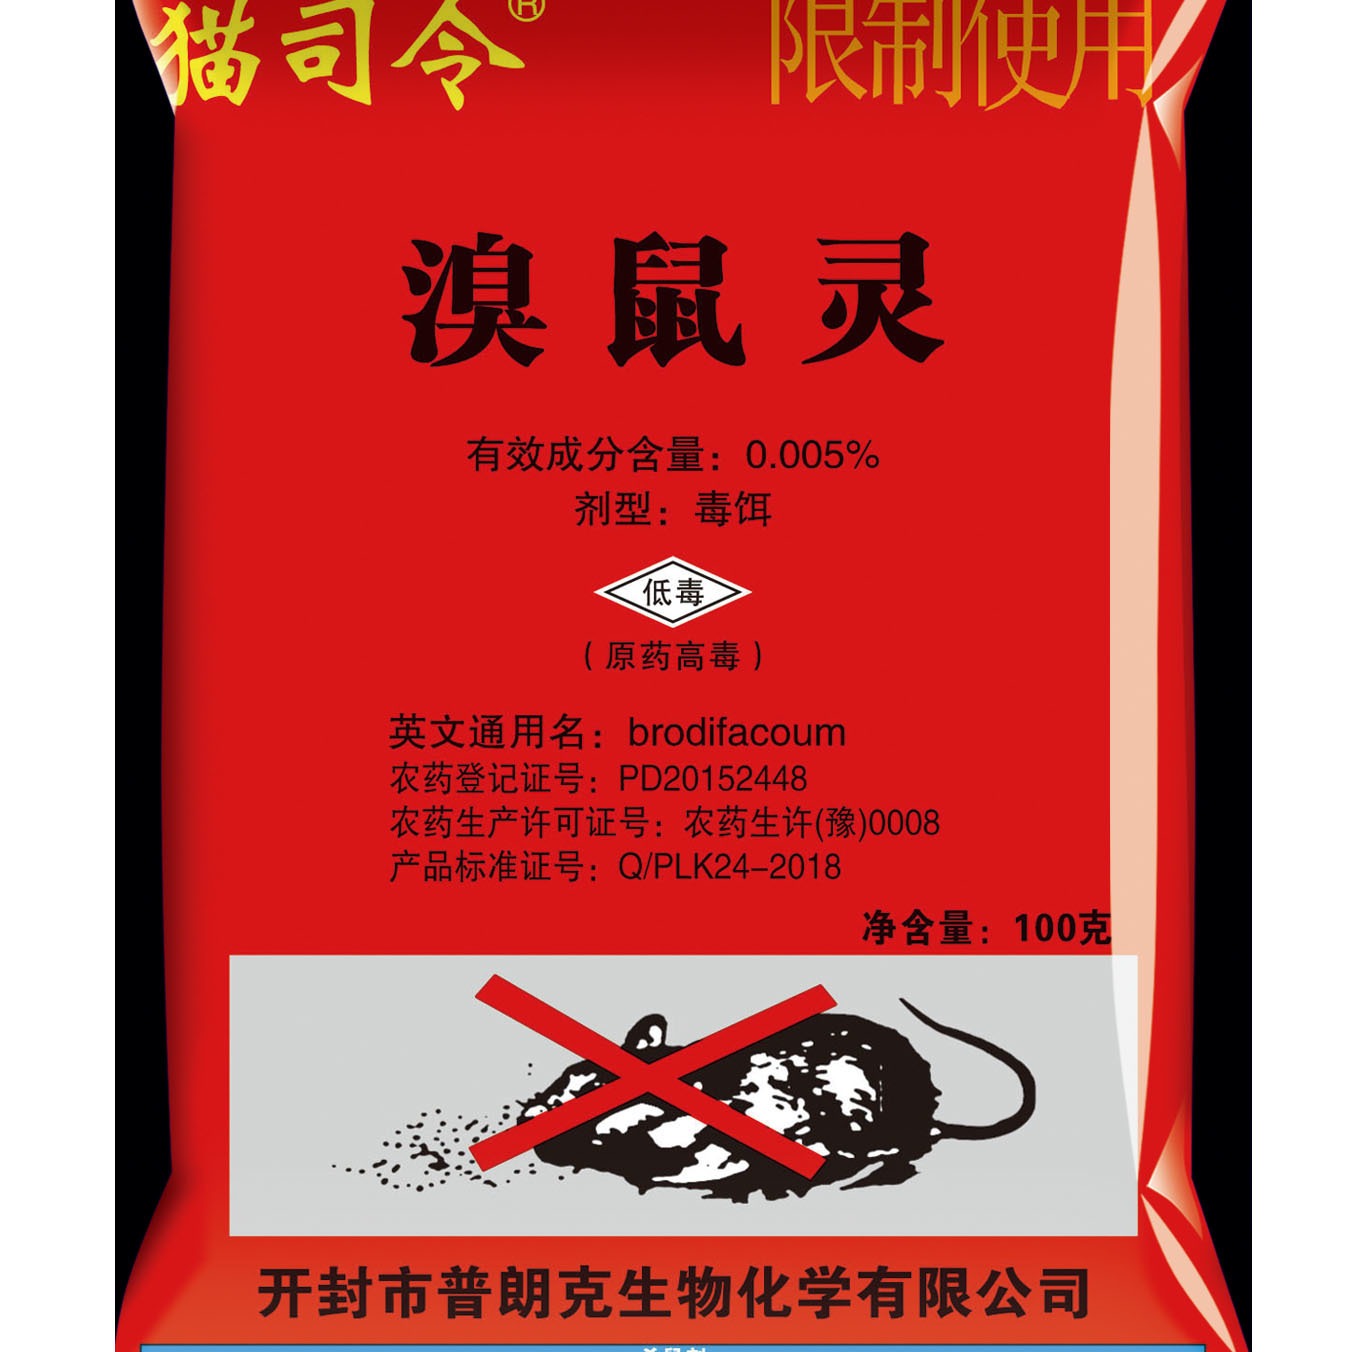 海珍鼠药王厂家 海珍威老鼠药批发价格 出口老鼠药厂家图片